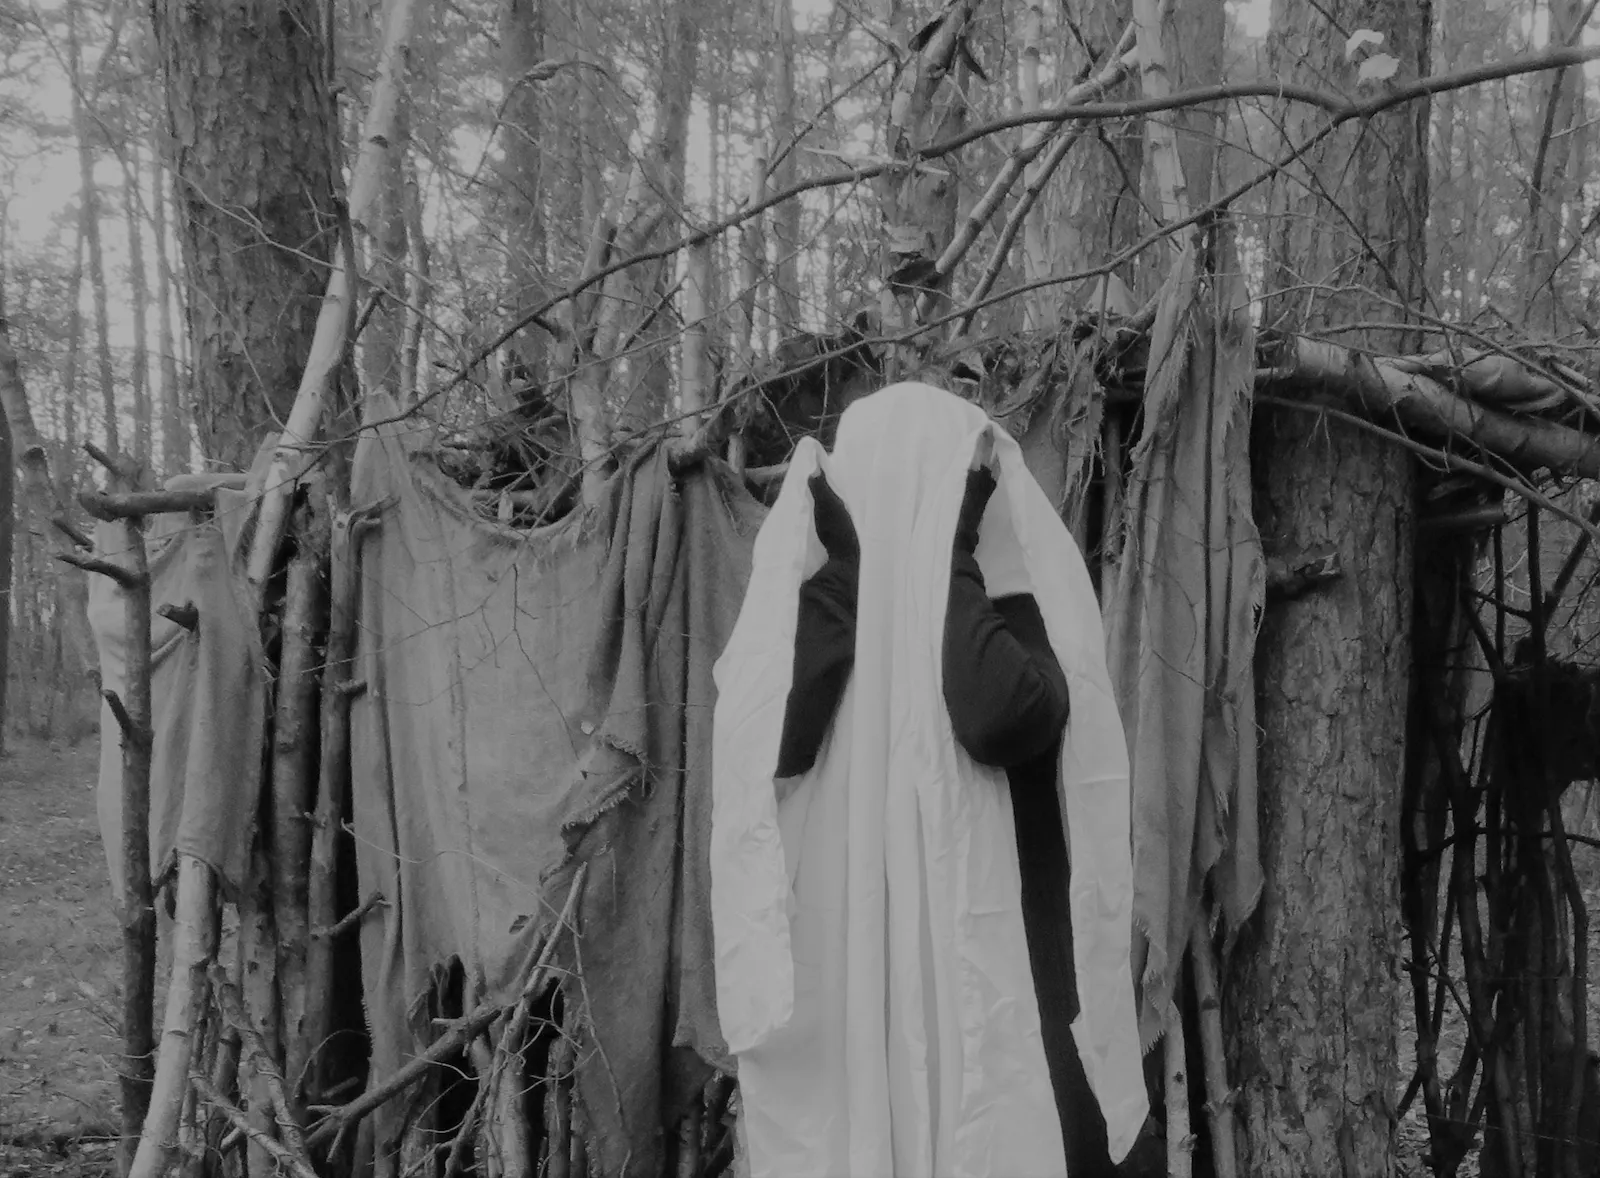 Schwarz-weiße Aufnahme von einer Person unter einem weißen Laken. Sie steht vor einer aus Lumpen und Stöckern gebauten kleinen Hütte im Wald.